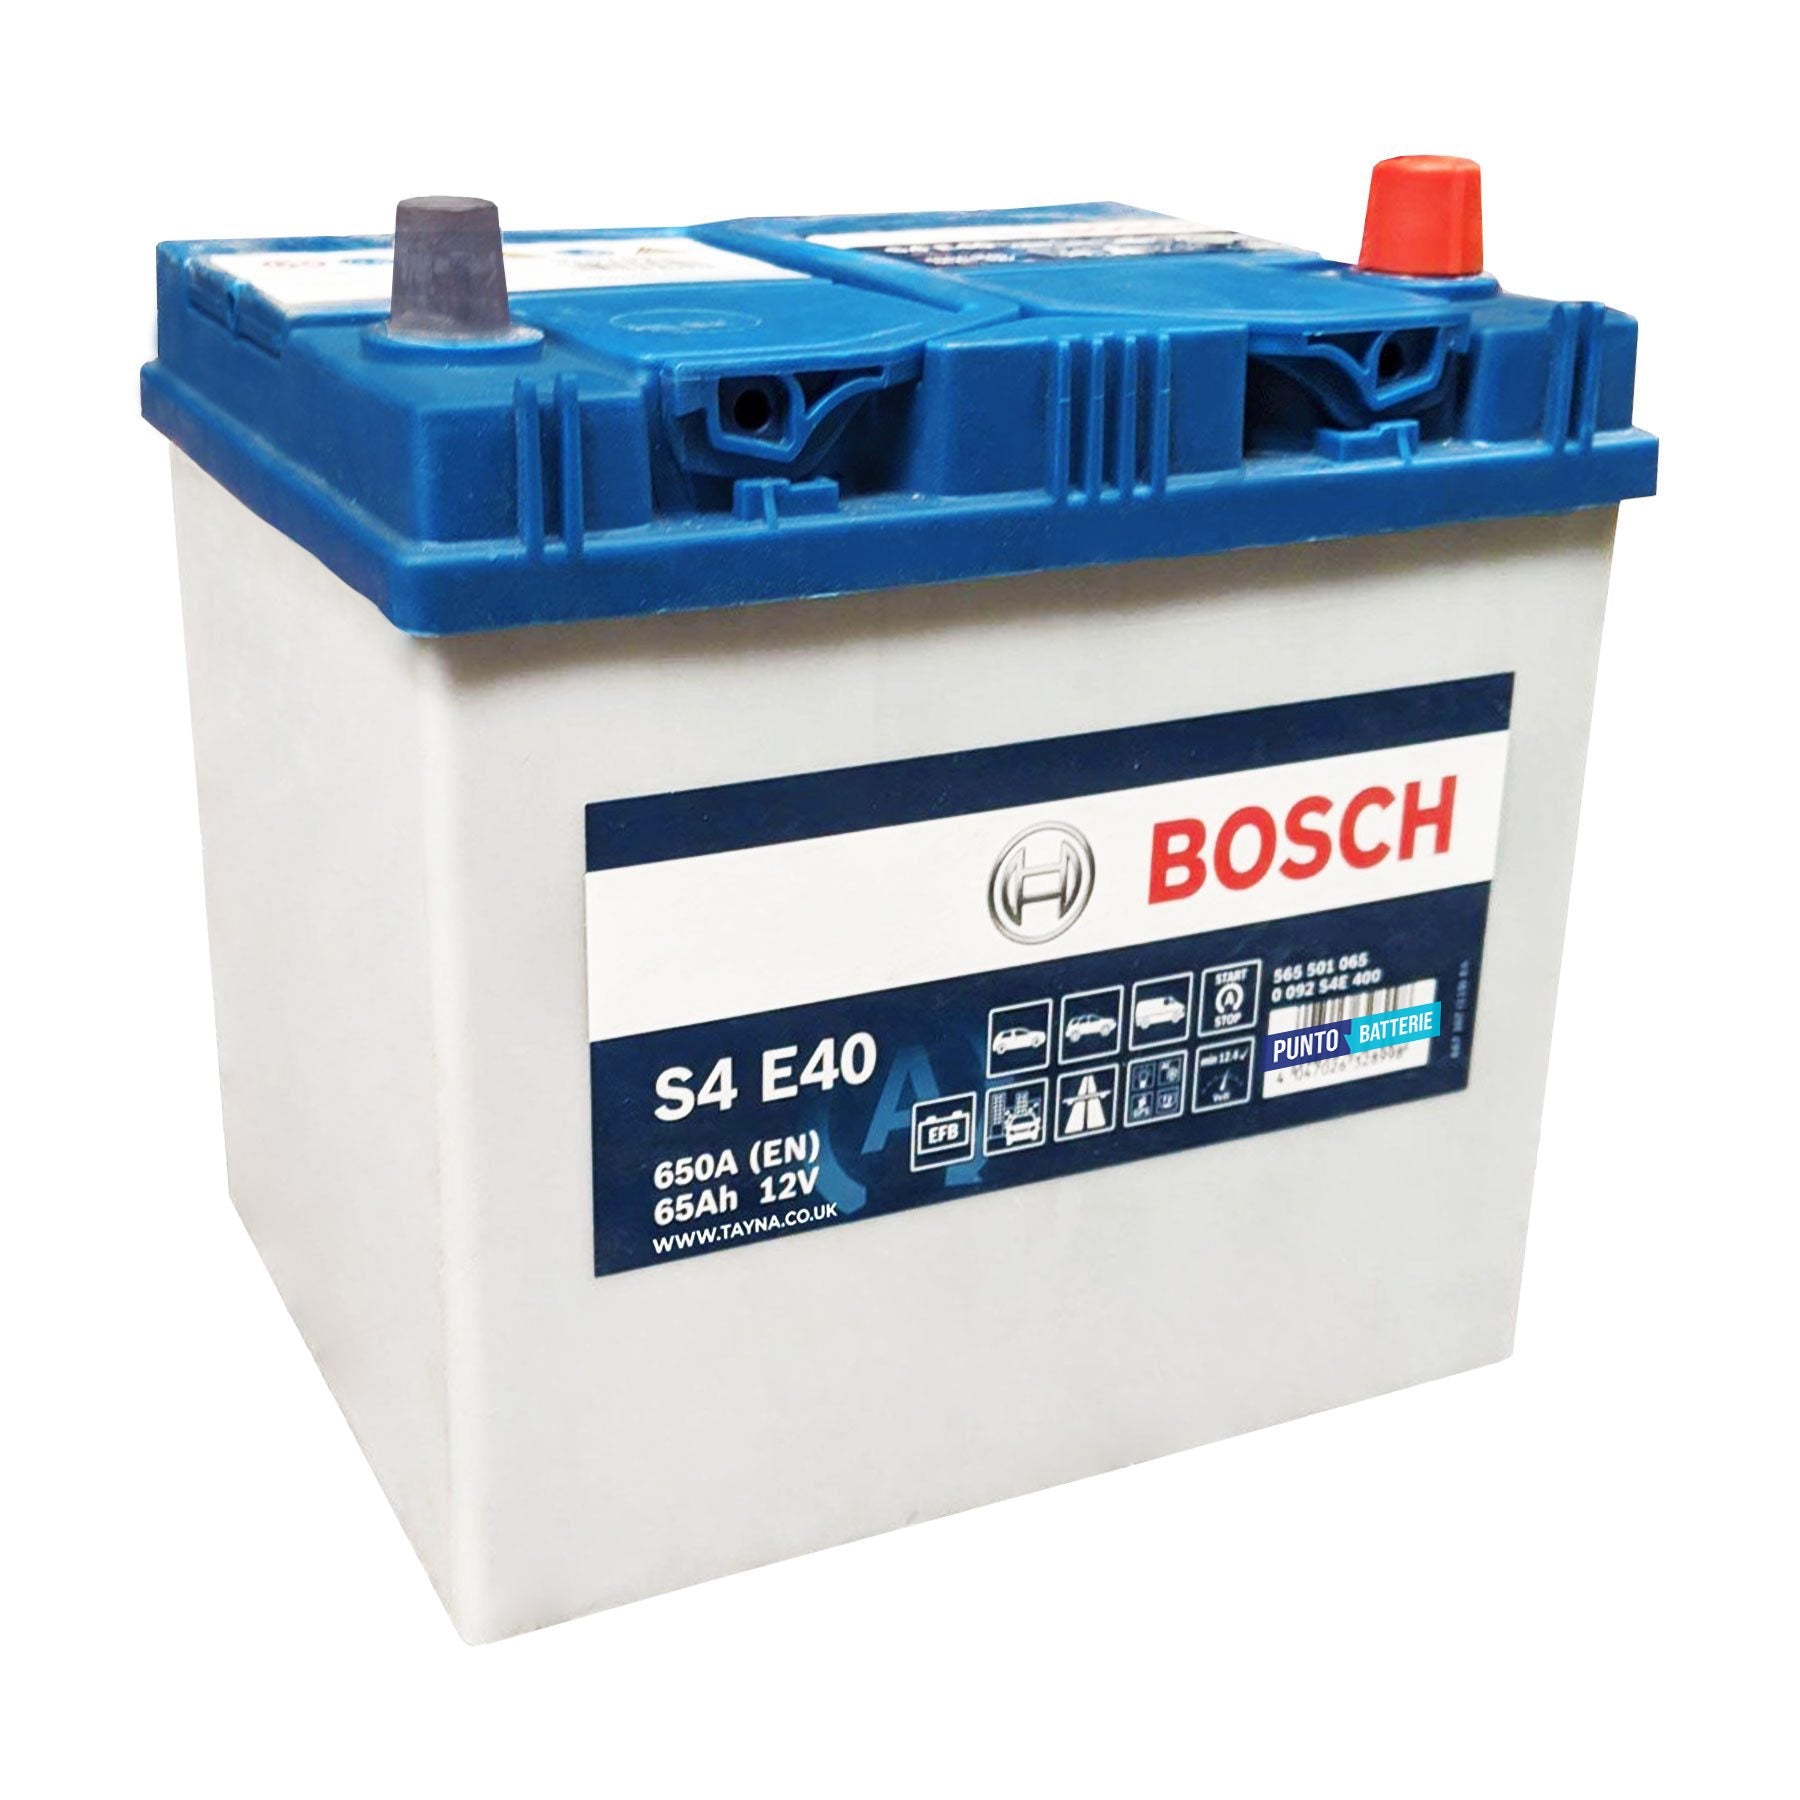 Batteria originale Bosch S4E S4 E40, dimensioni 231 x 173 x 218.5, polo positivo a destra, 12 volt, 65 amperora, 650 ampere, EFB. Batteria per auto e veicoli leggeri con start e stop.